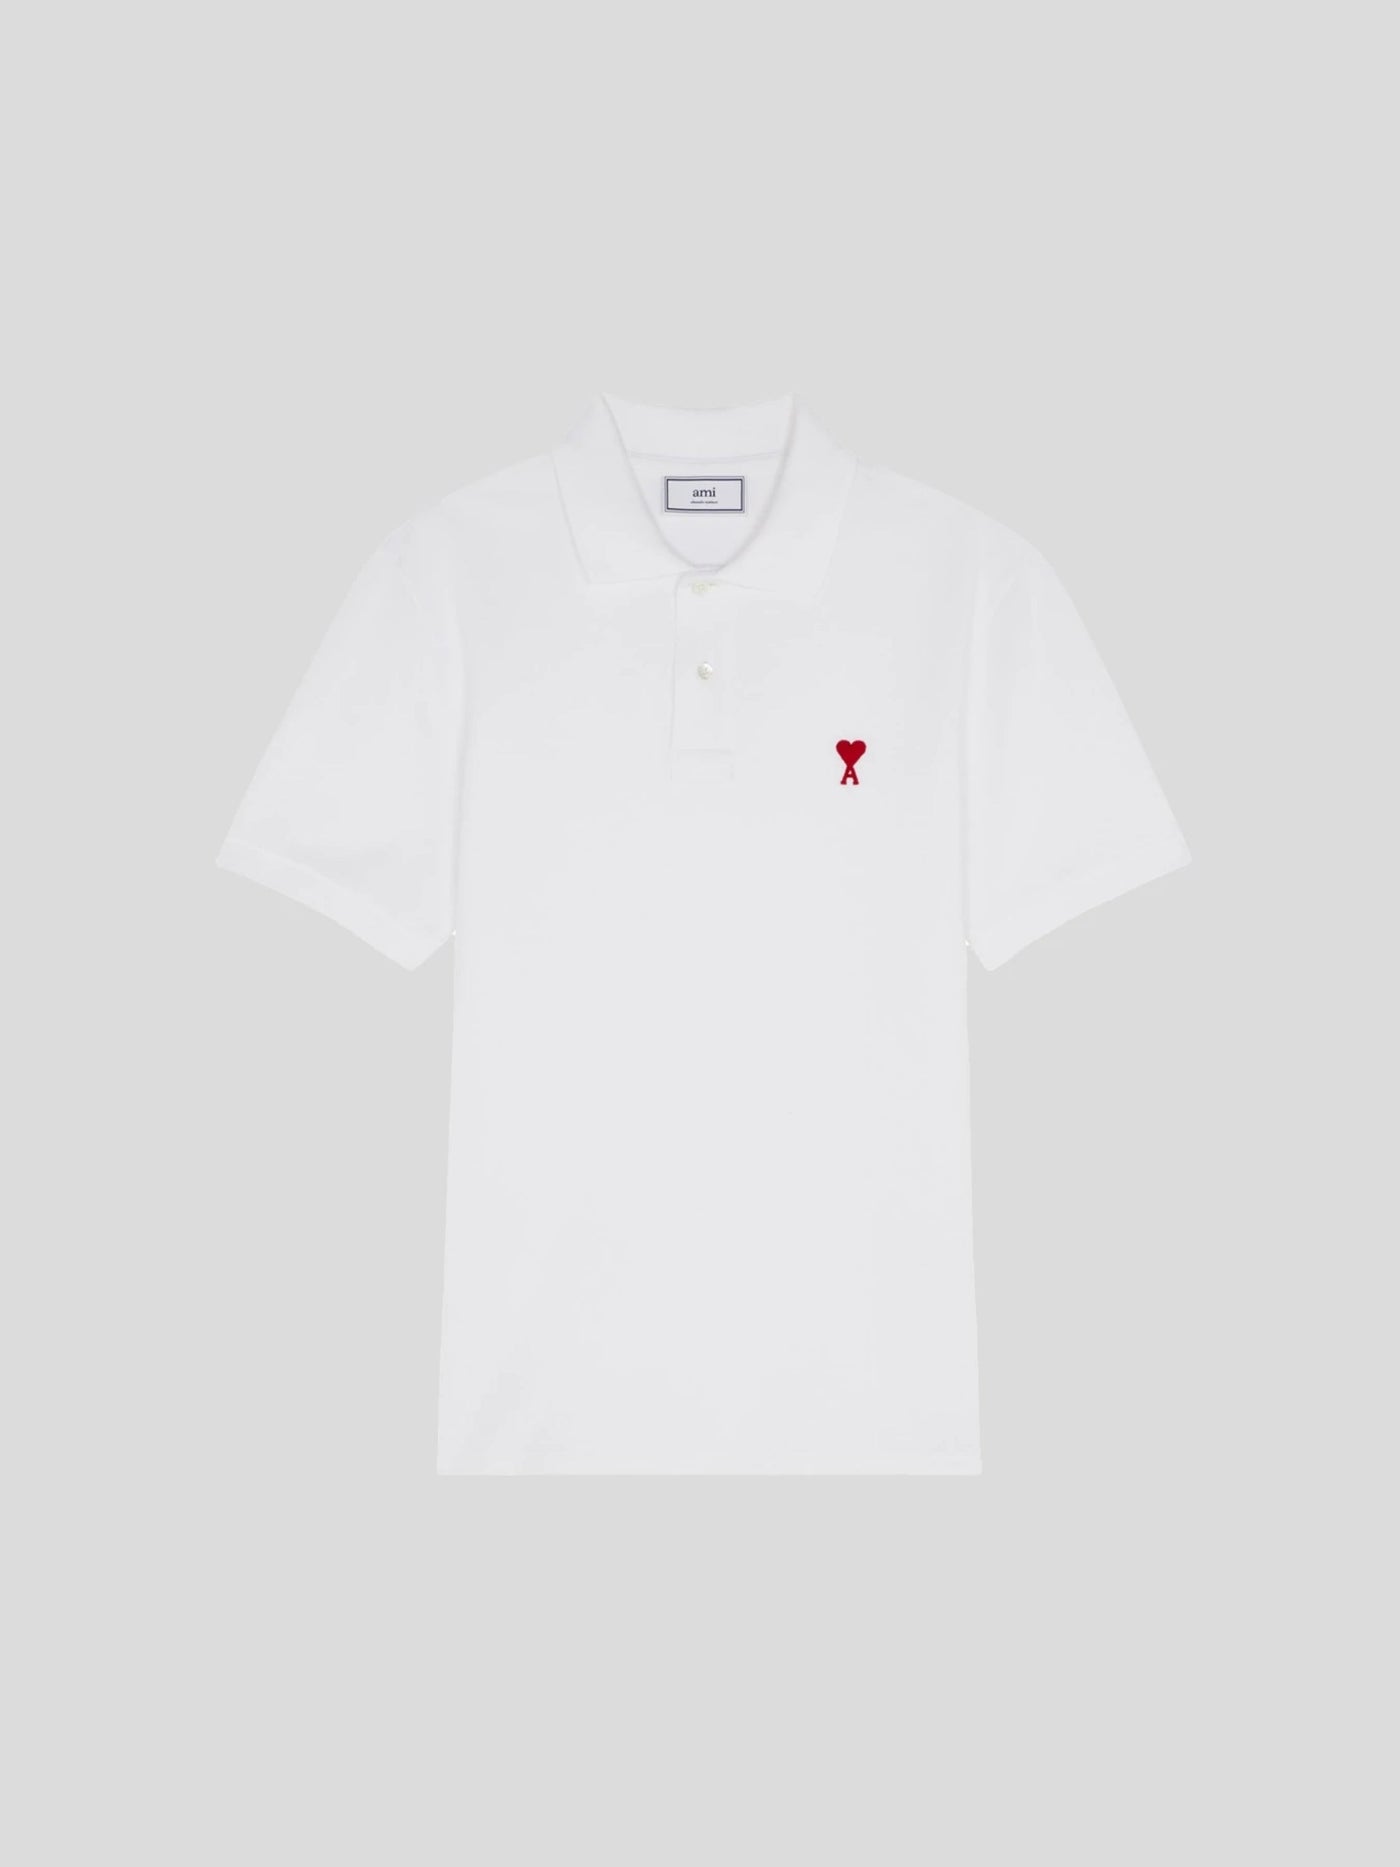 AMI Paris Shirts & Polos | Piqué Polo Shirt AMI De Coeur in Weiß | BFHPL001.760 100 white / ADAM/EVE